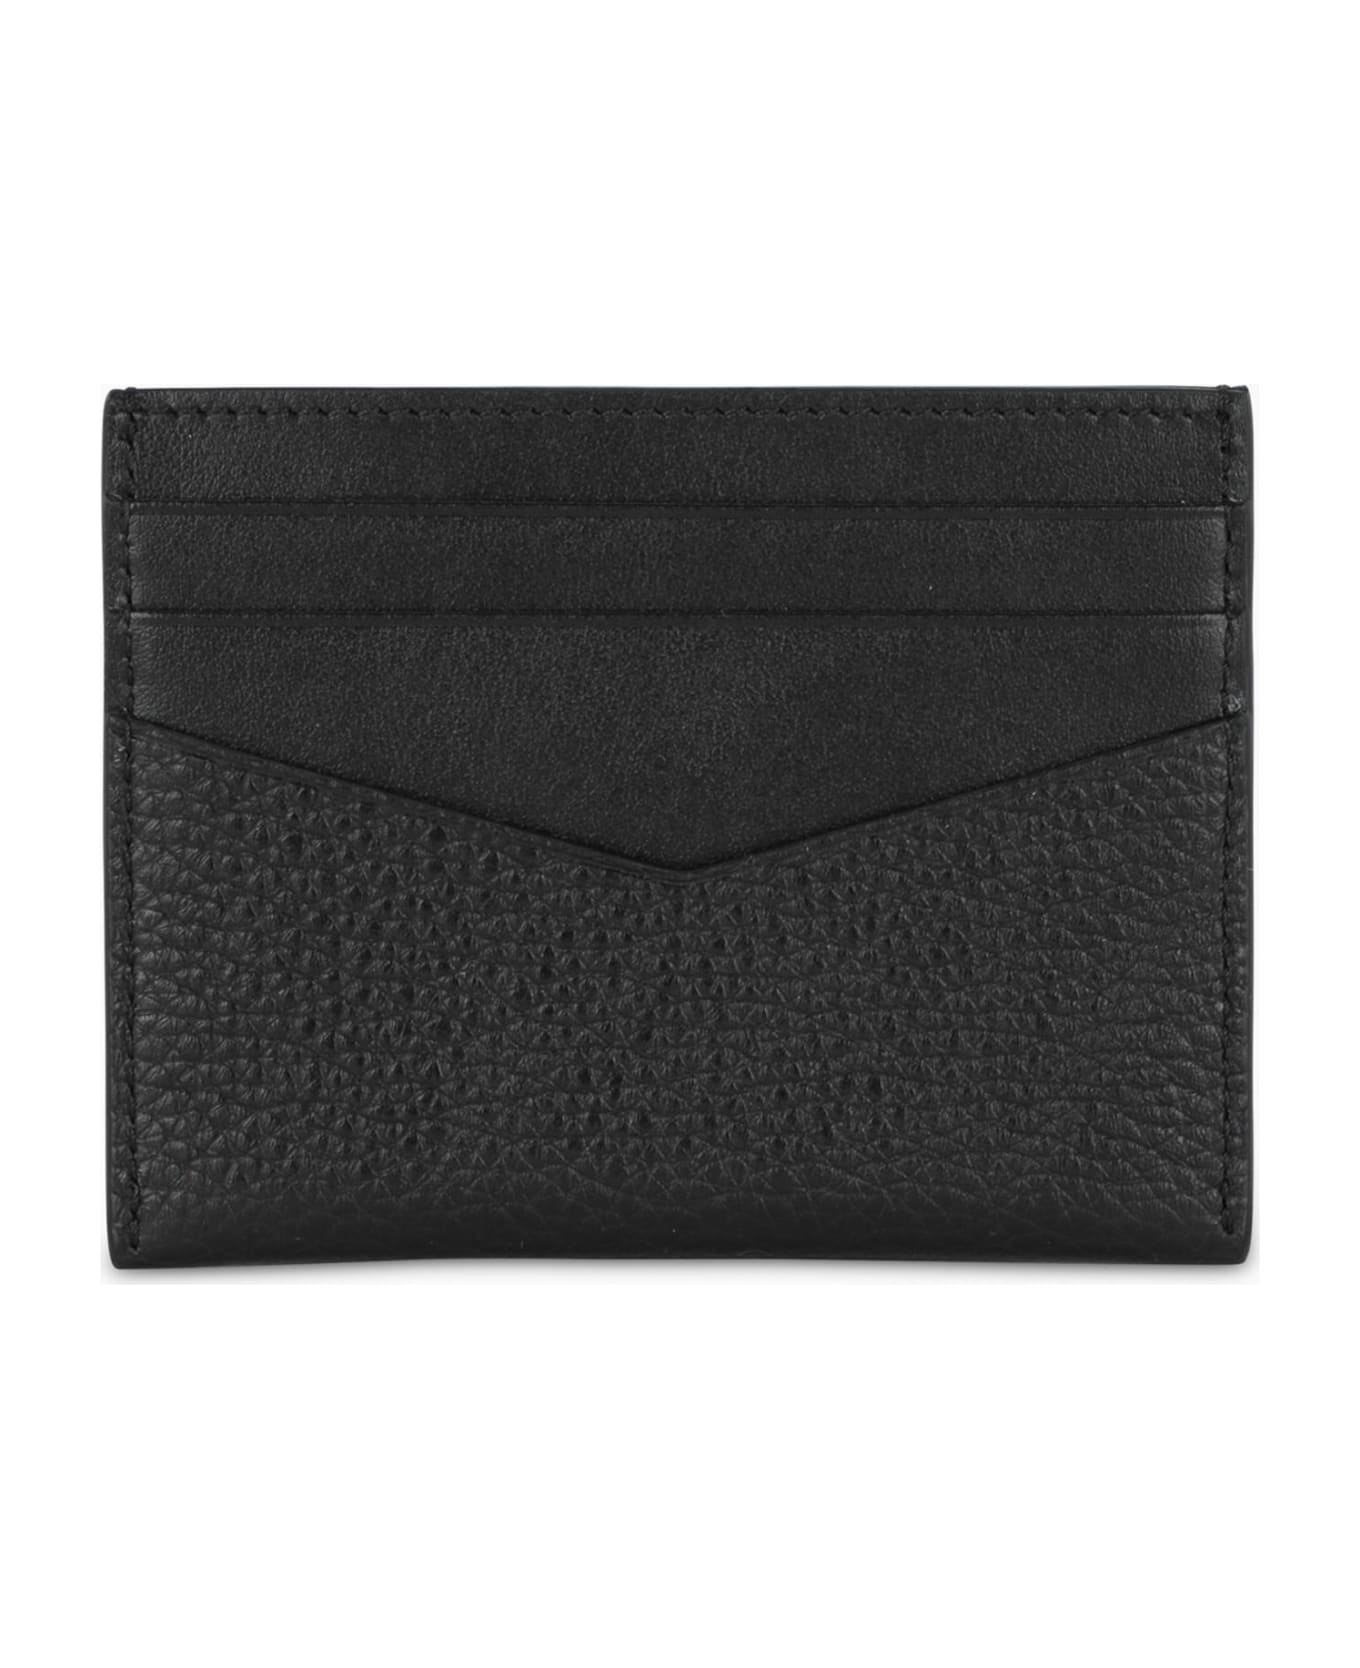 Givenchy Black Credit Card Holder - Black